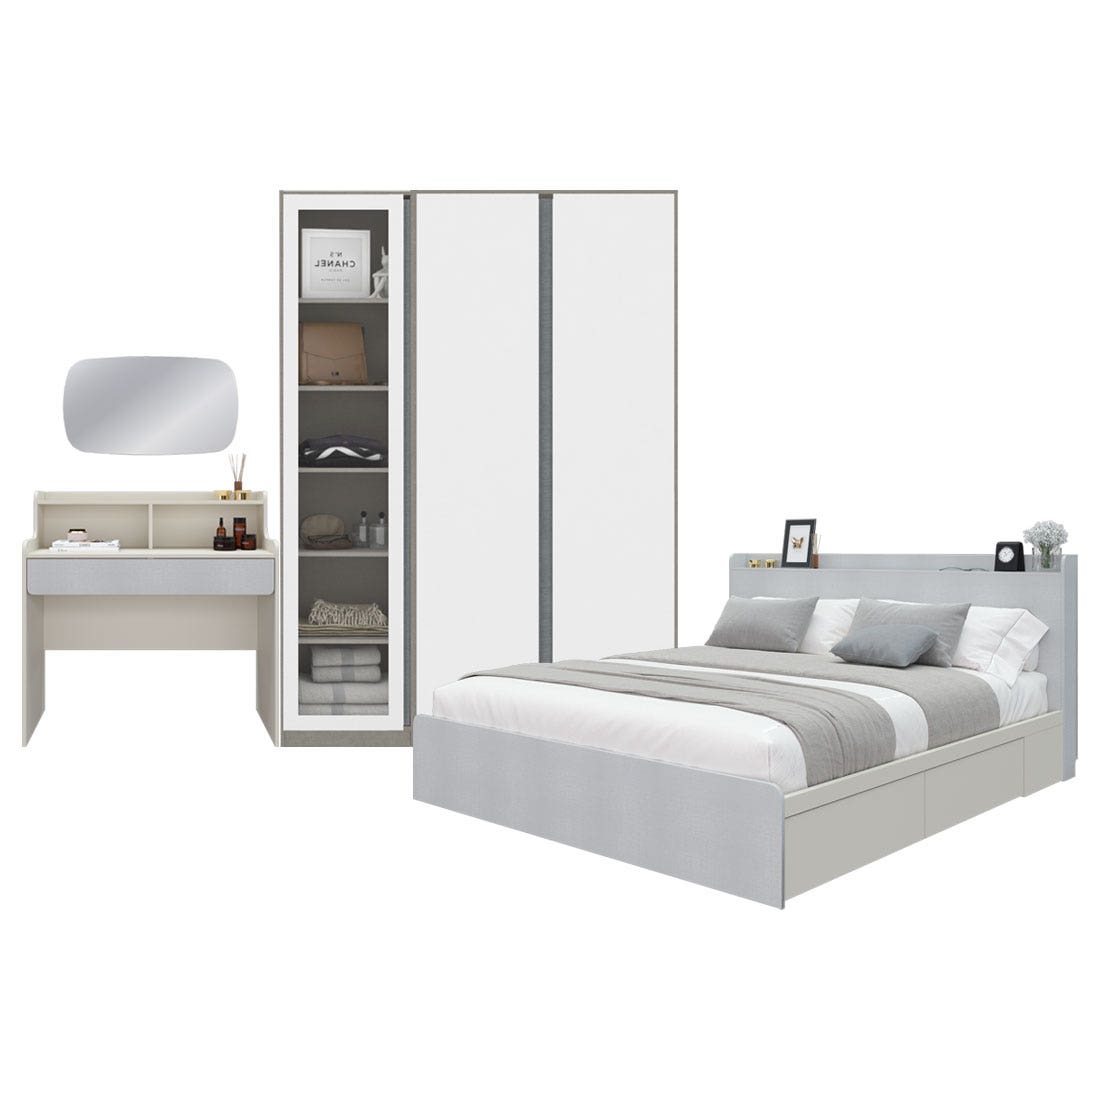 ชุดห้องนอน 5 ฟุต Aiko & Blox 150 & โตีะเครื่องแป้งพร้อมกระจก สีขาวลายผ้า01